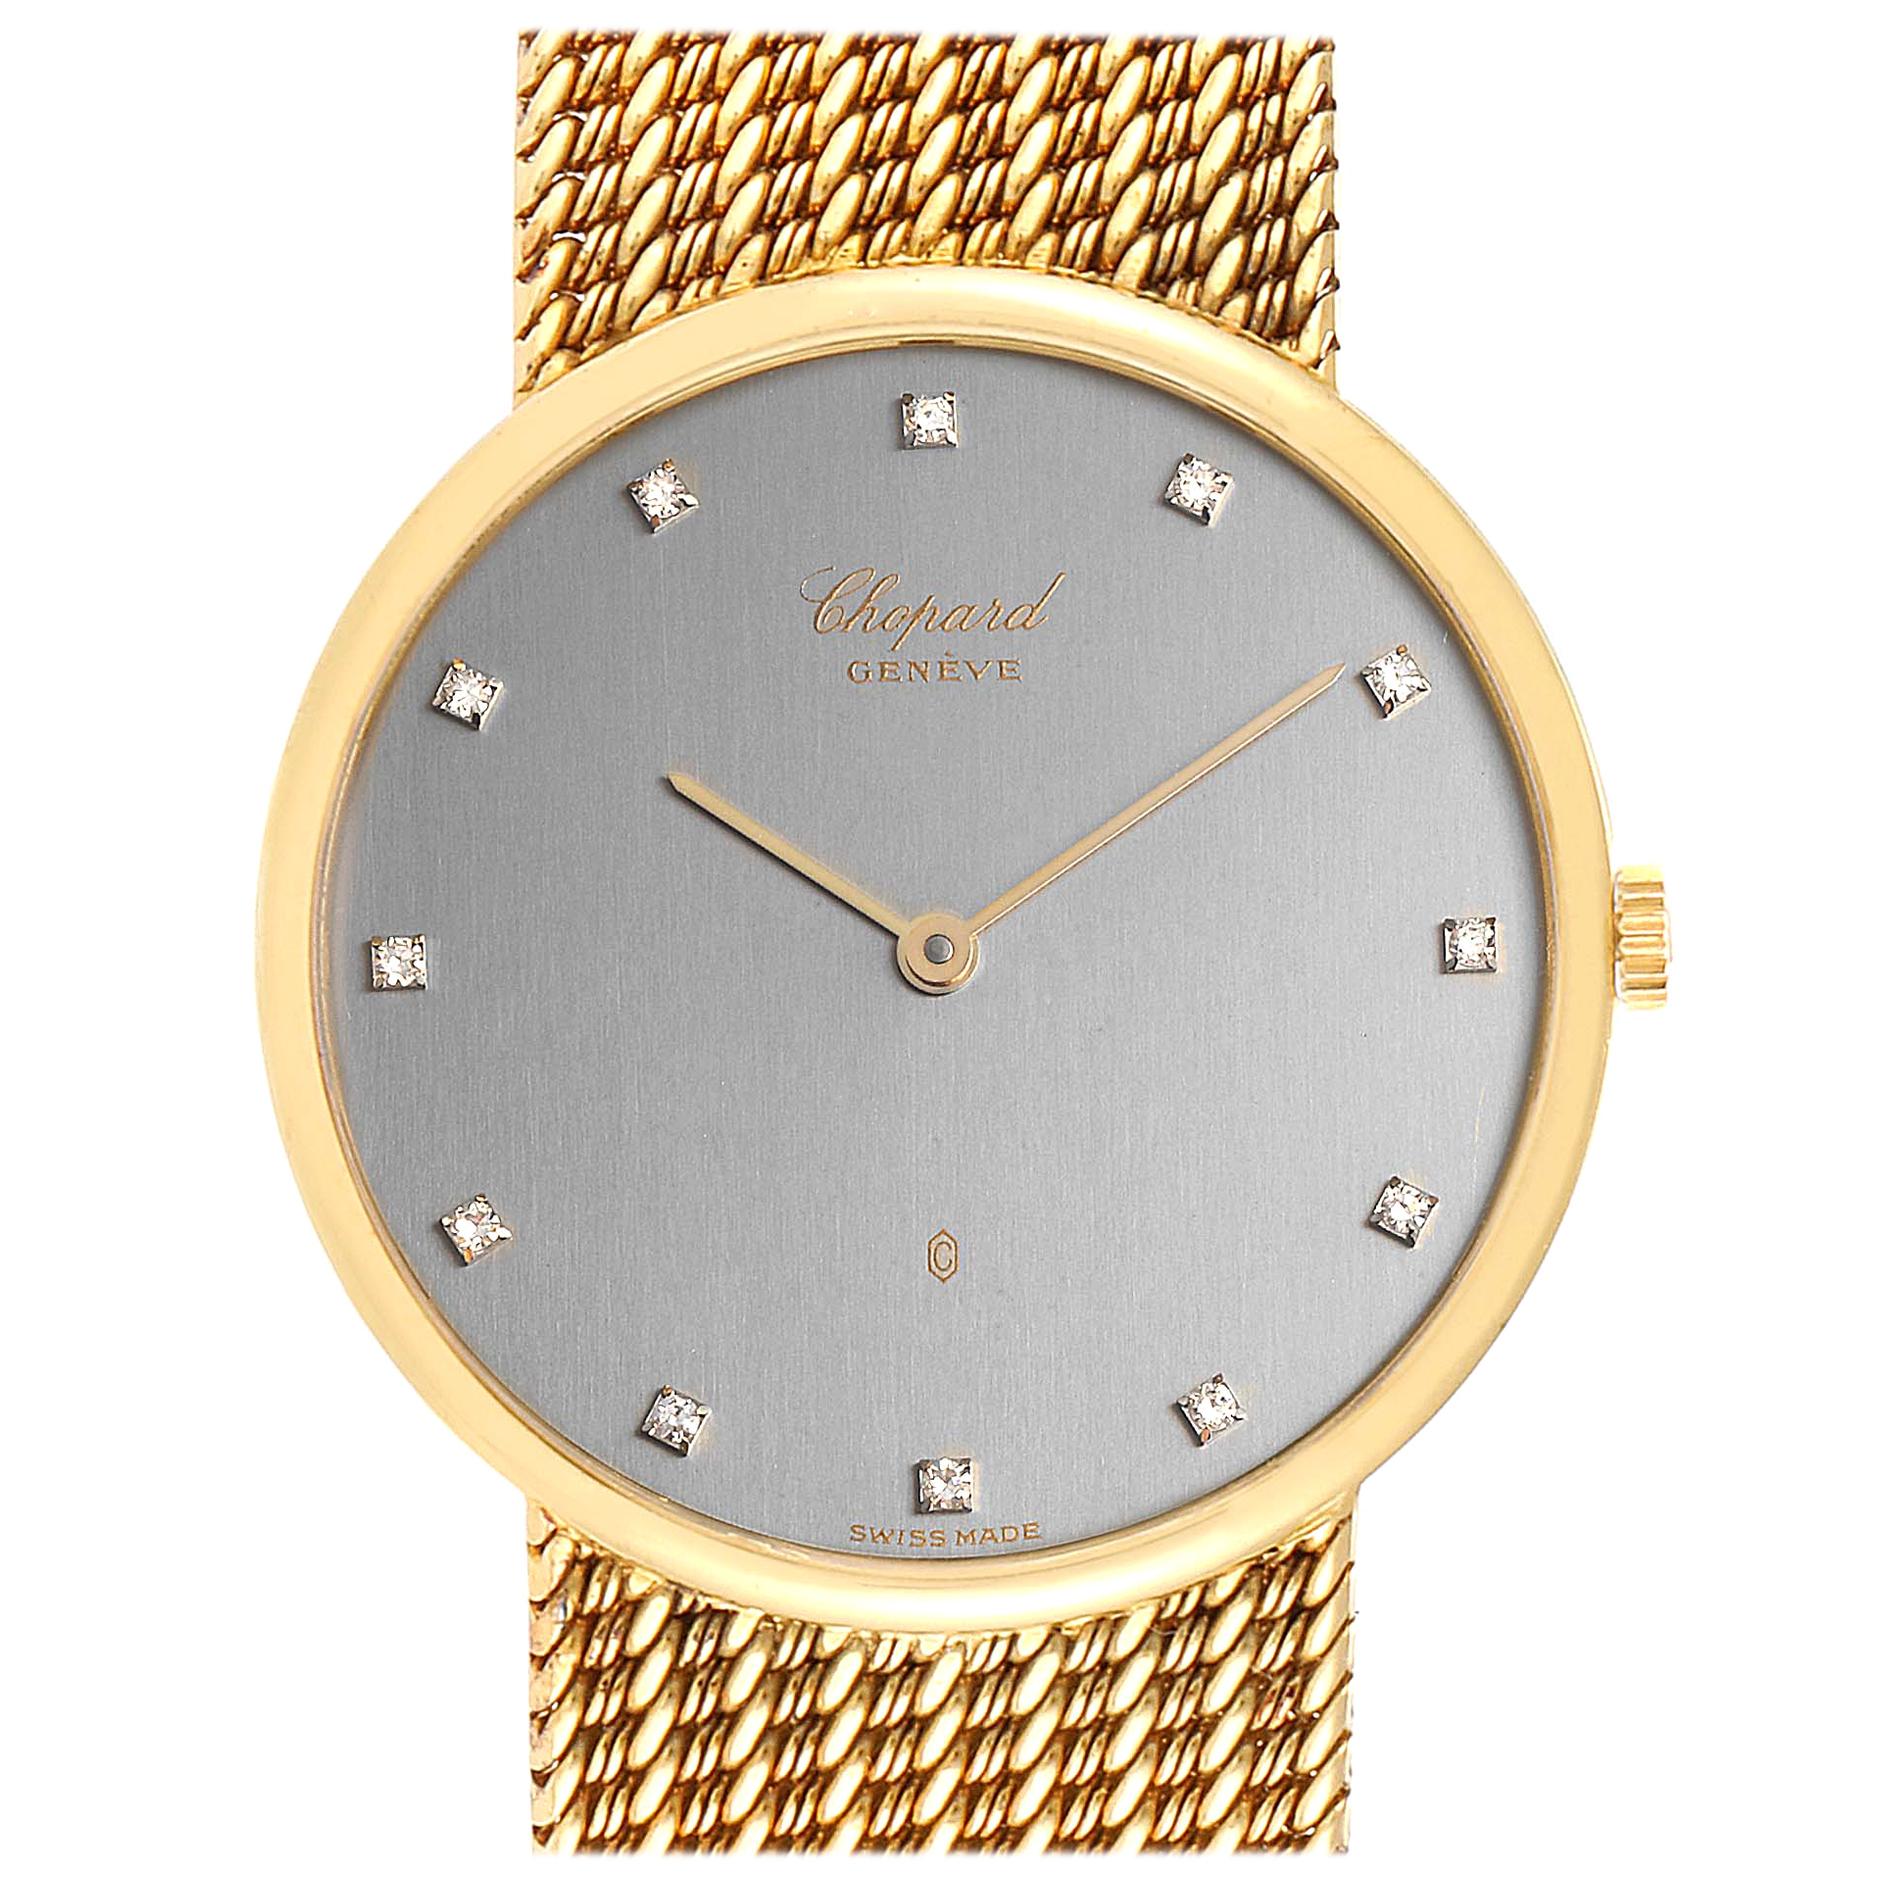 Chopard Classique 18 Karat Yellow Gold Quartz Men's Watch 1091 For Sale